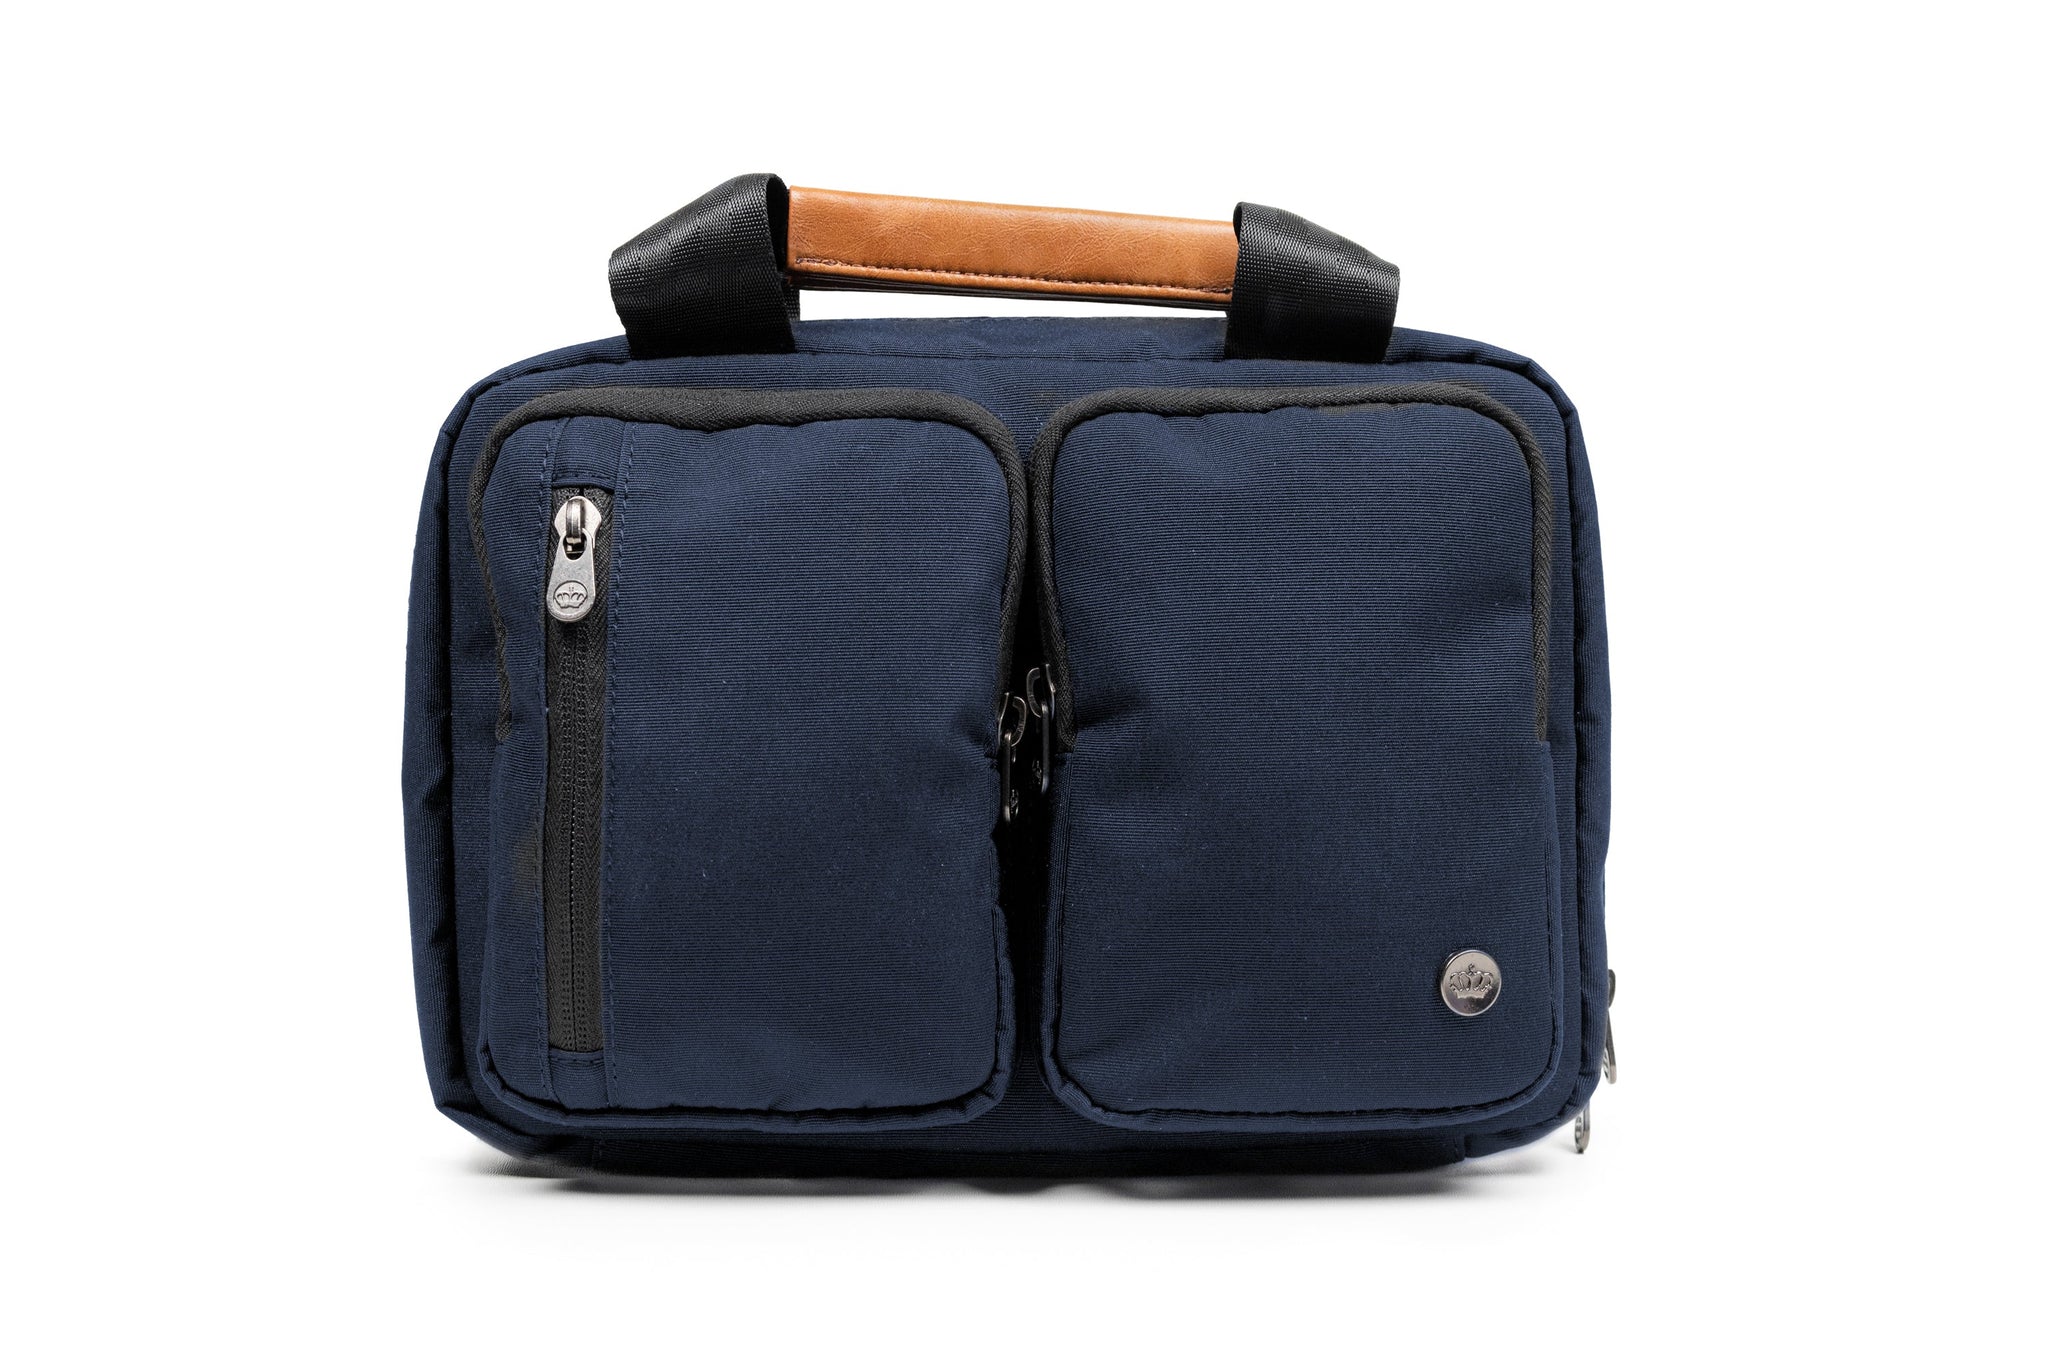 PKG Simcoe Recycled Essentials Bag by PKG Carry Goods